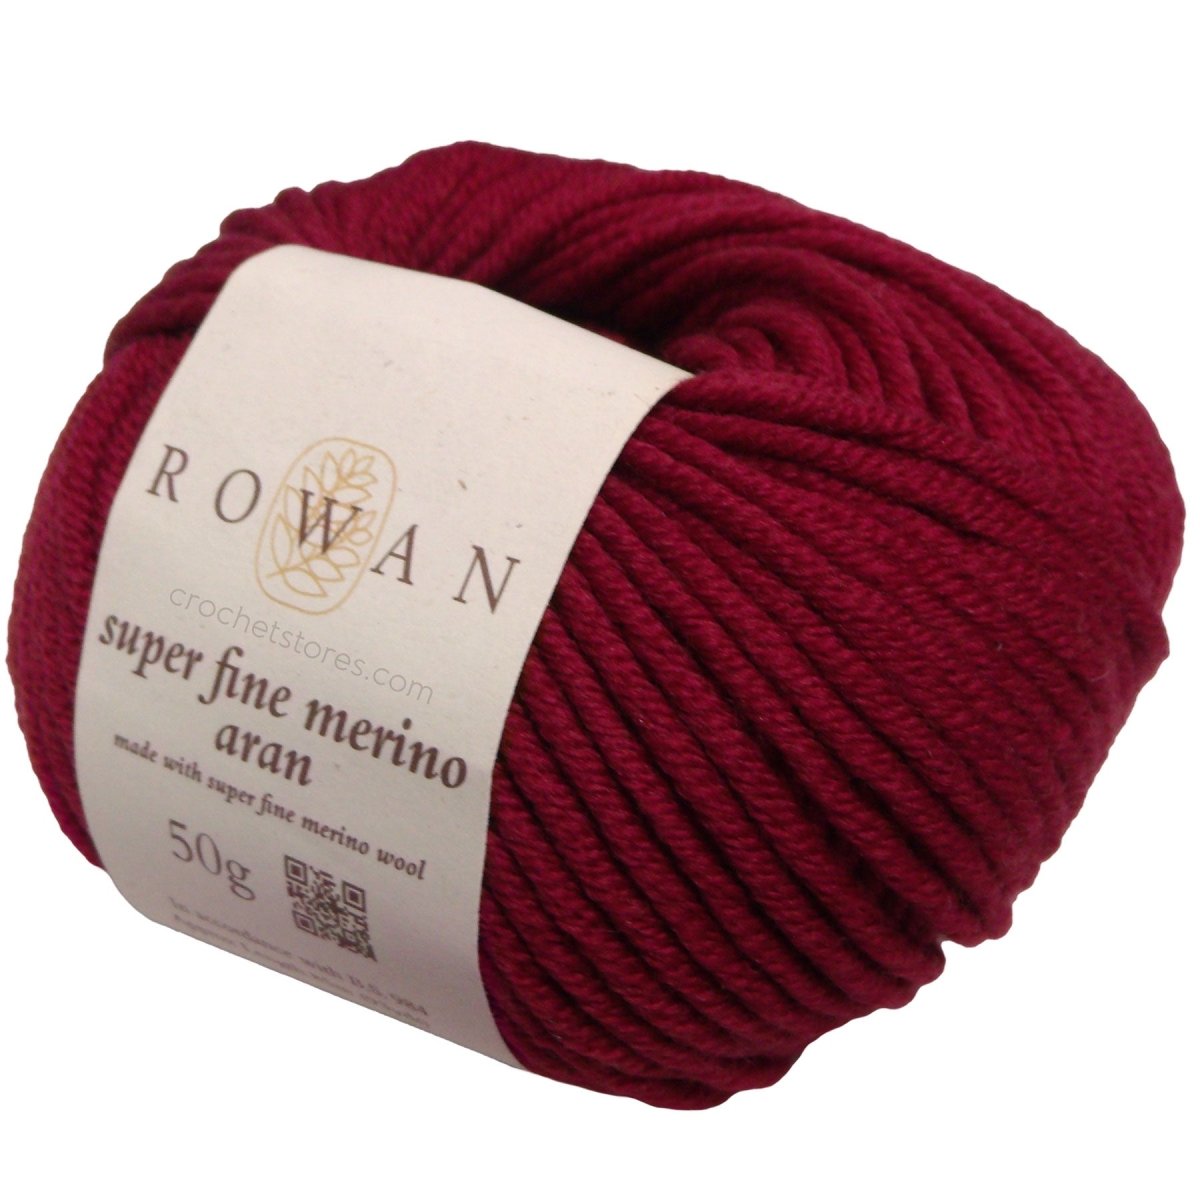 SUPER FINE MERINO ARAN - Crochetstores9802185-064053859037907